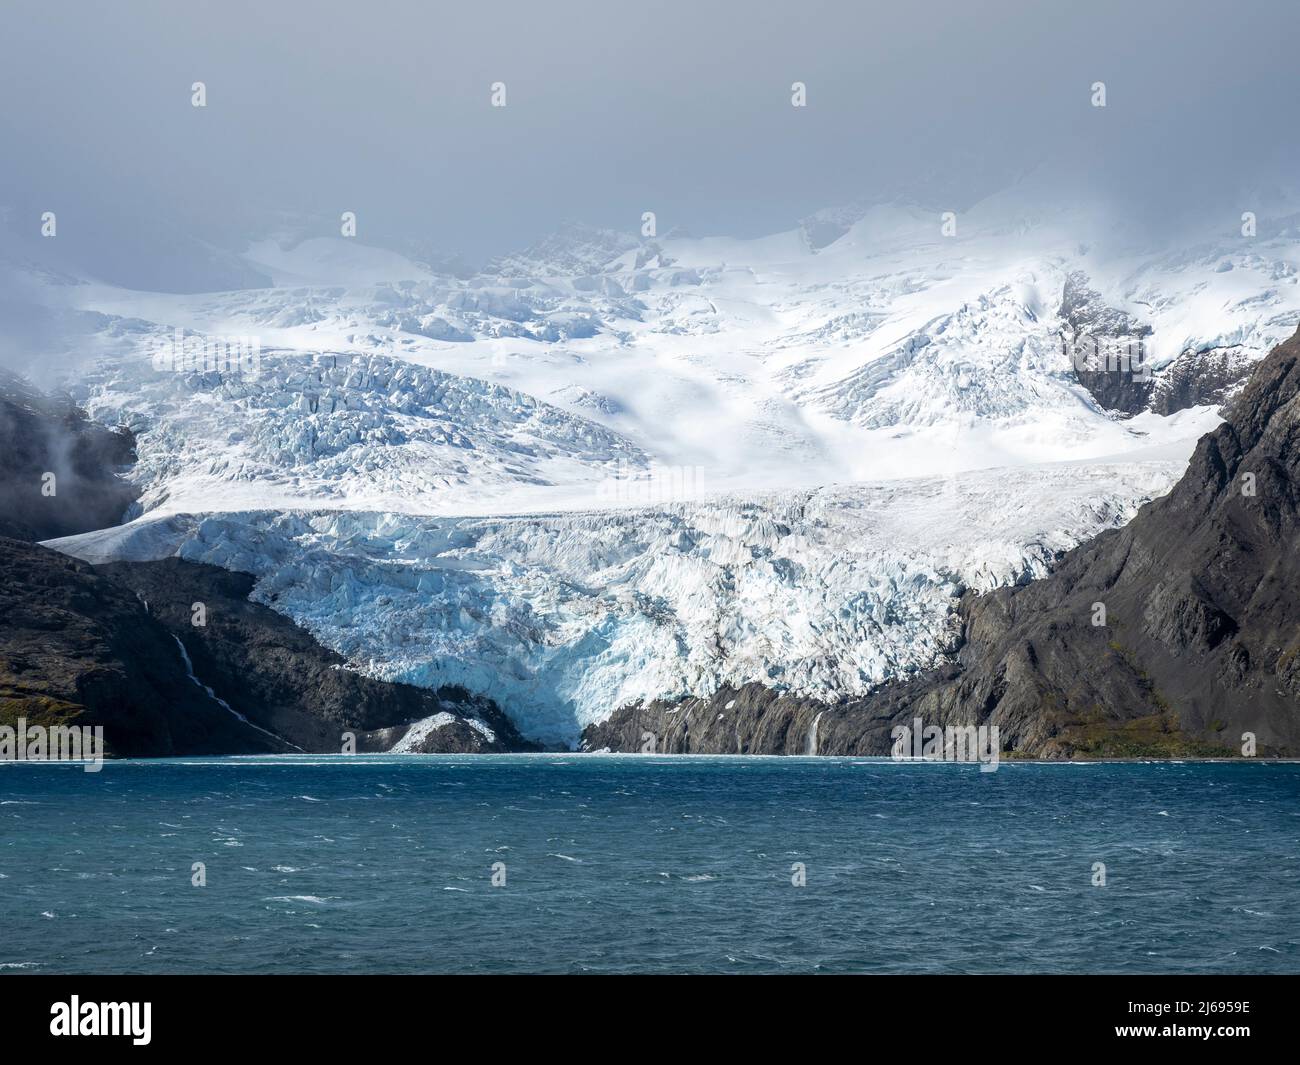 La glace et la neige couvraient les montagnes avec des glaciers dans la baie du Roi Haakon, en Géorgie du Sud, dans l'Atlantique Sud et dans les régions polaires Banque D'Images